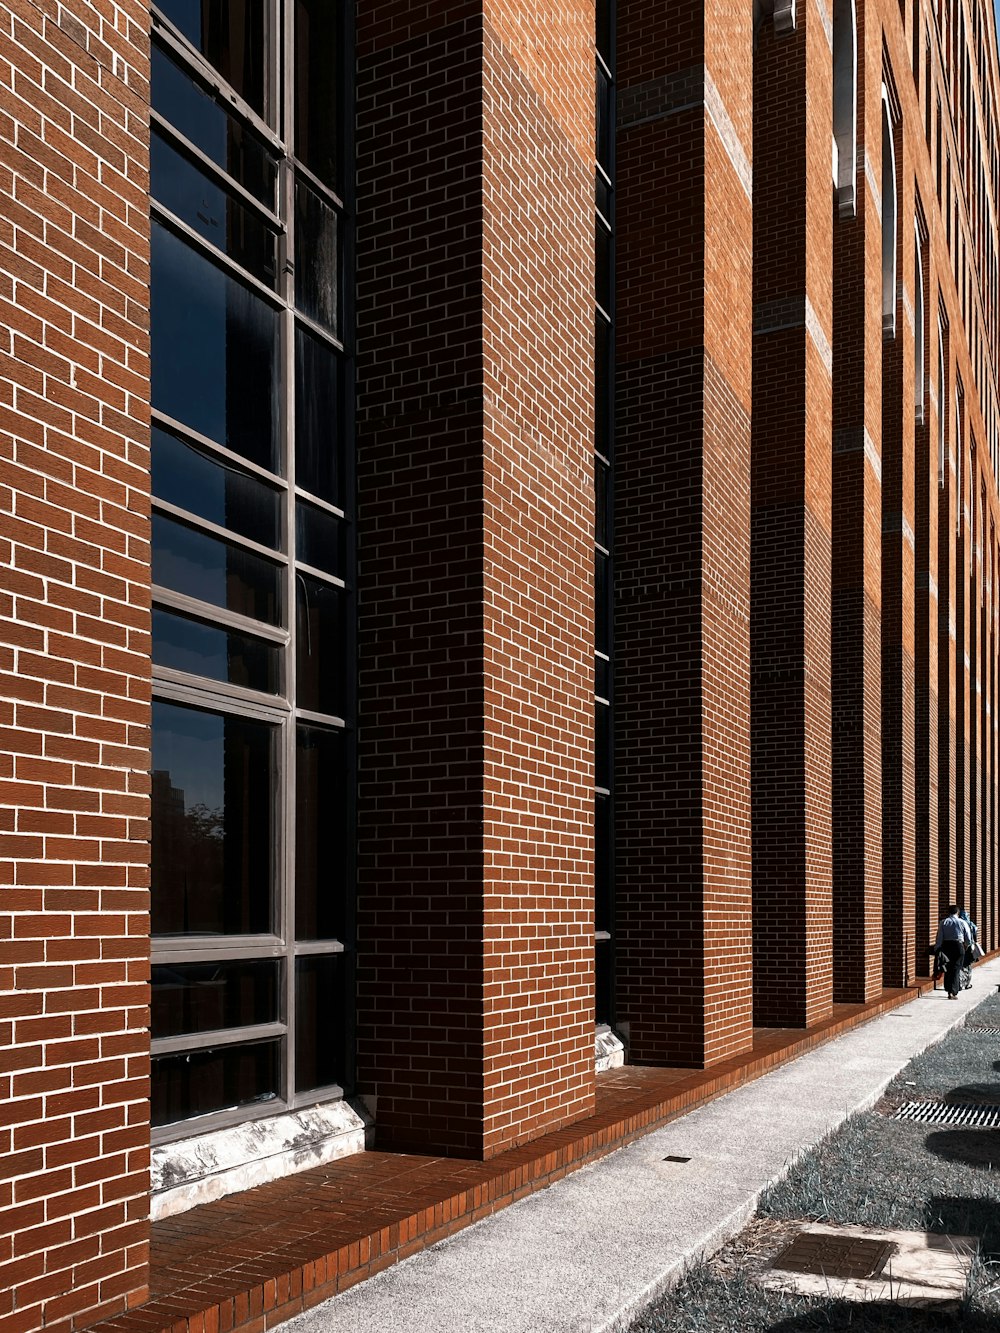 Edificio de ladrillo marrón con ventanas de vidrio